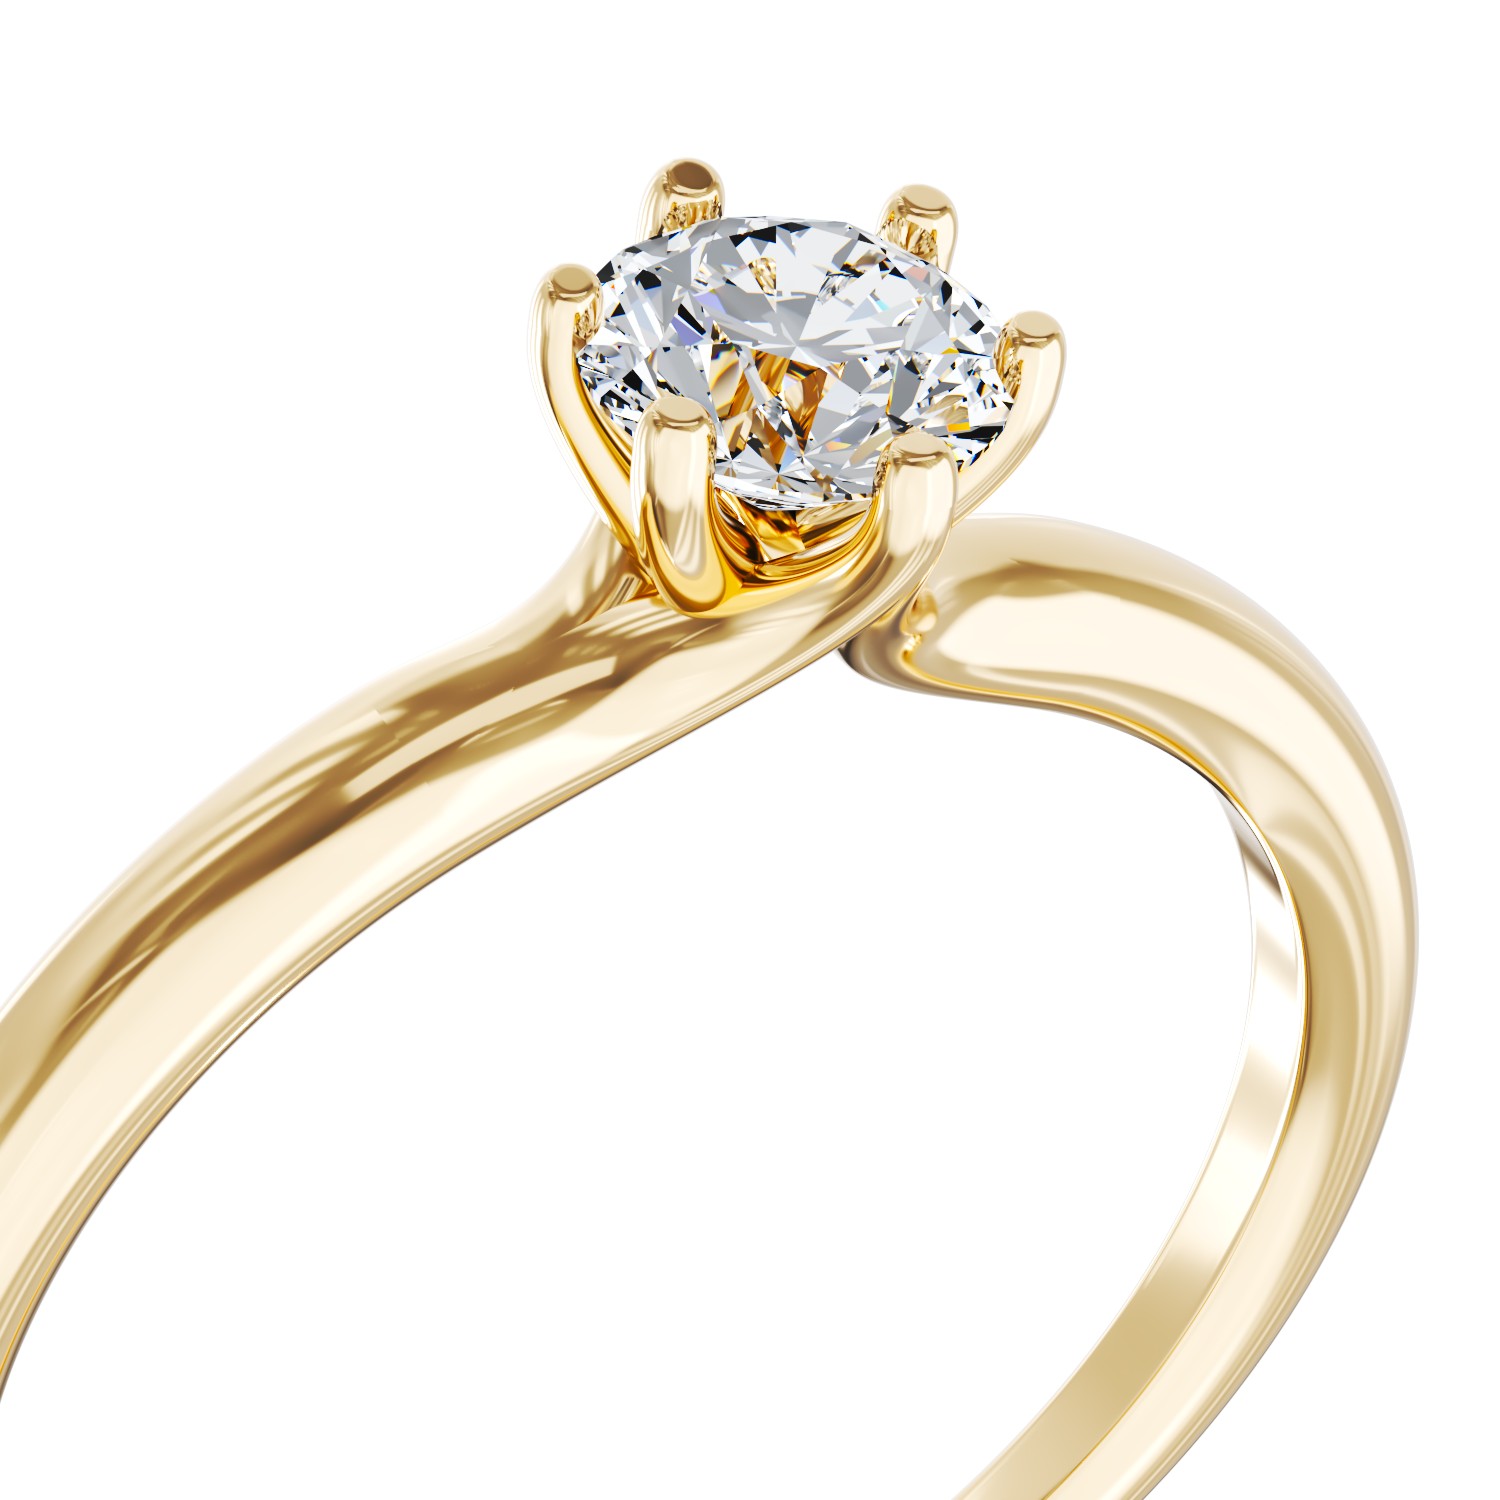 Eljegyzési gyűrű 18K-os sárga aranyból 0,3ct gyémánttal. Gramm: 2,3